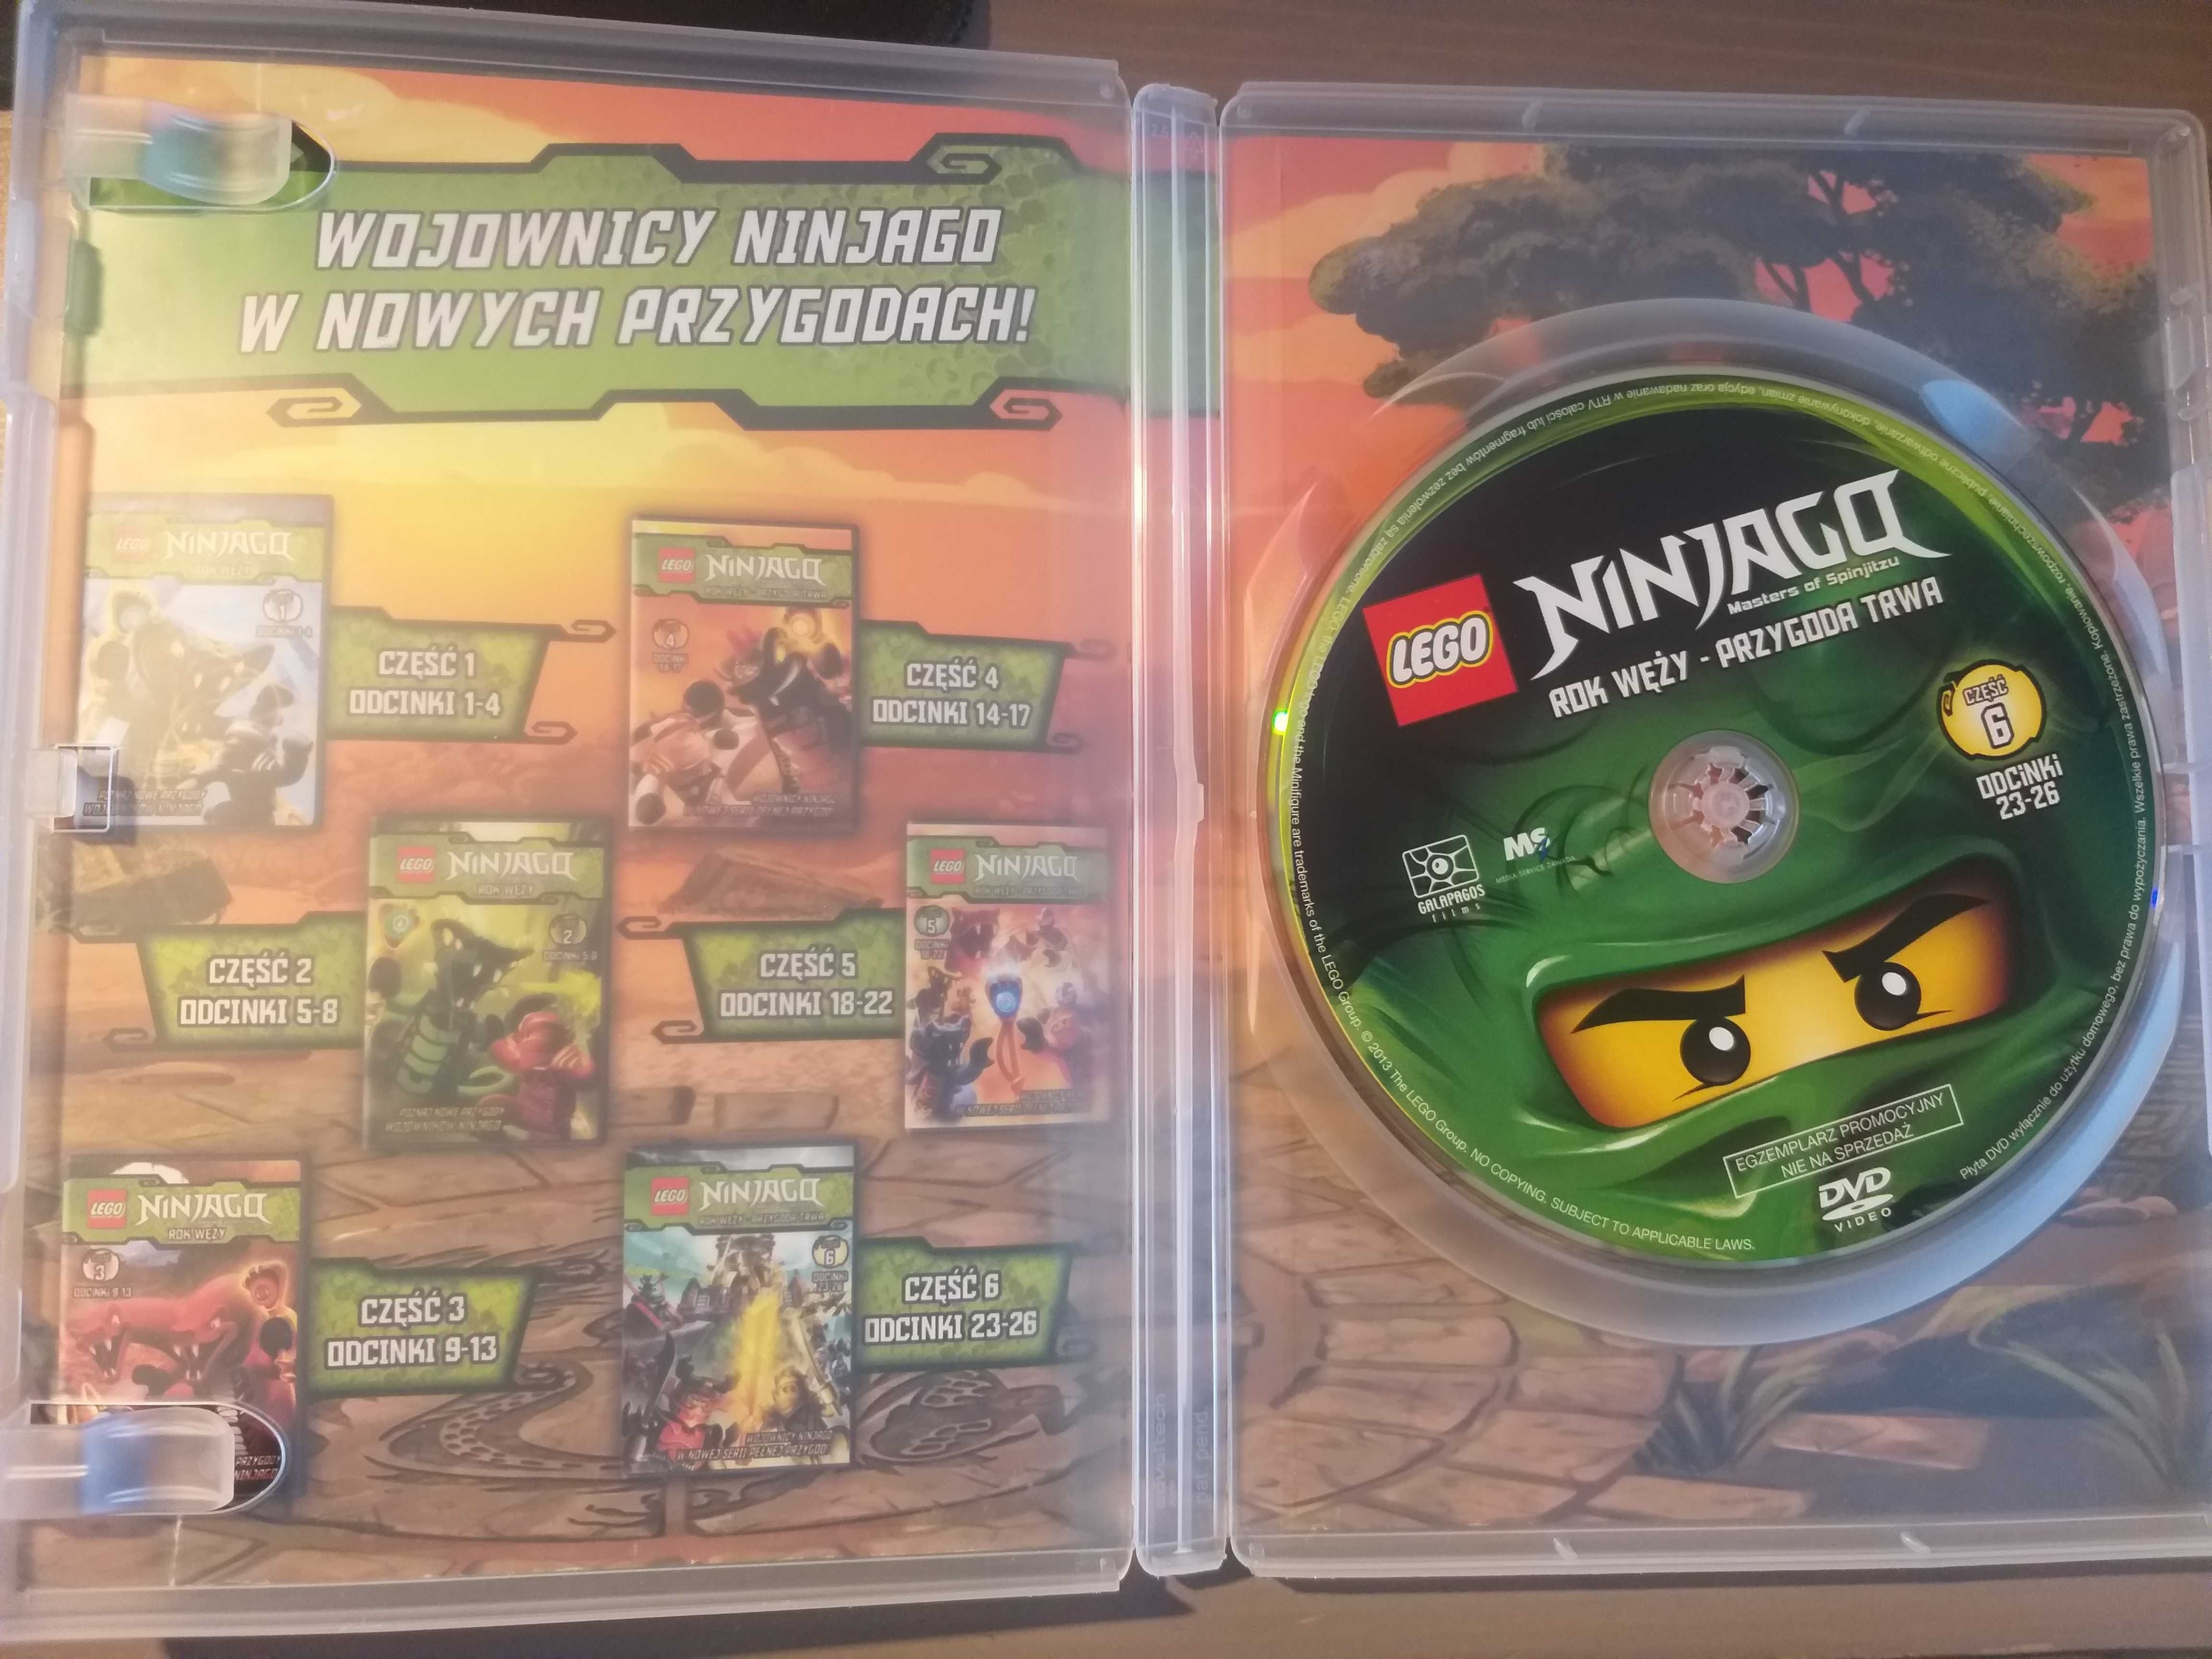 Ninjago Rok Węży - Przygoda Trwa część 6 DVD PL